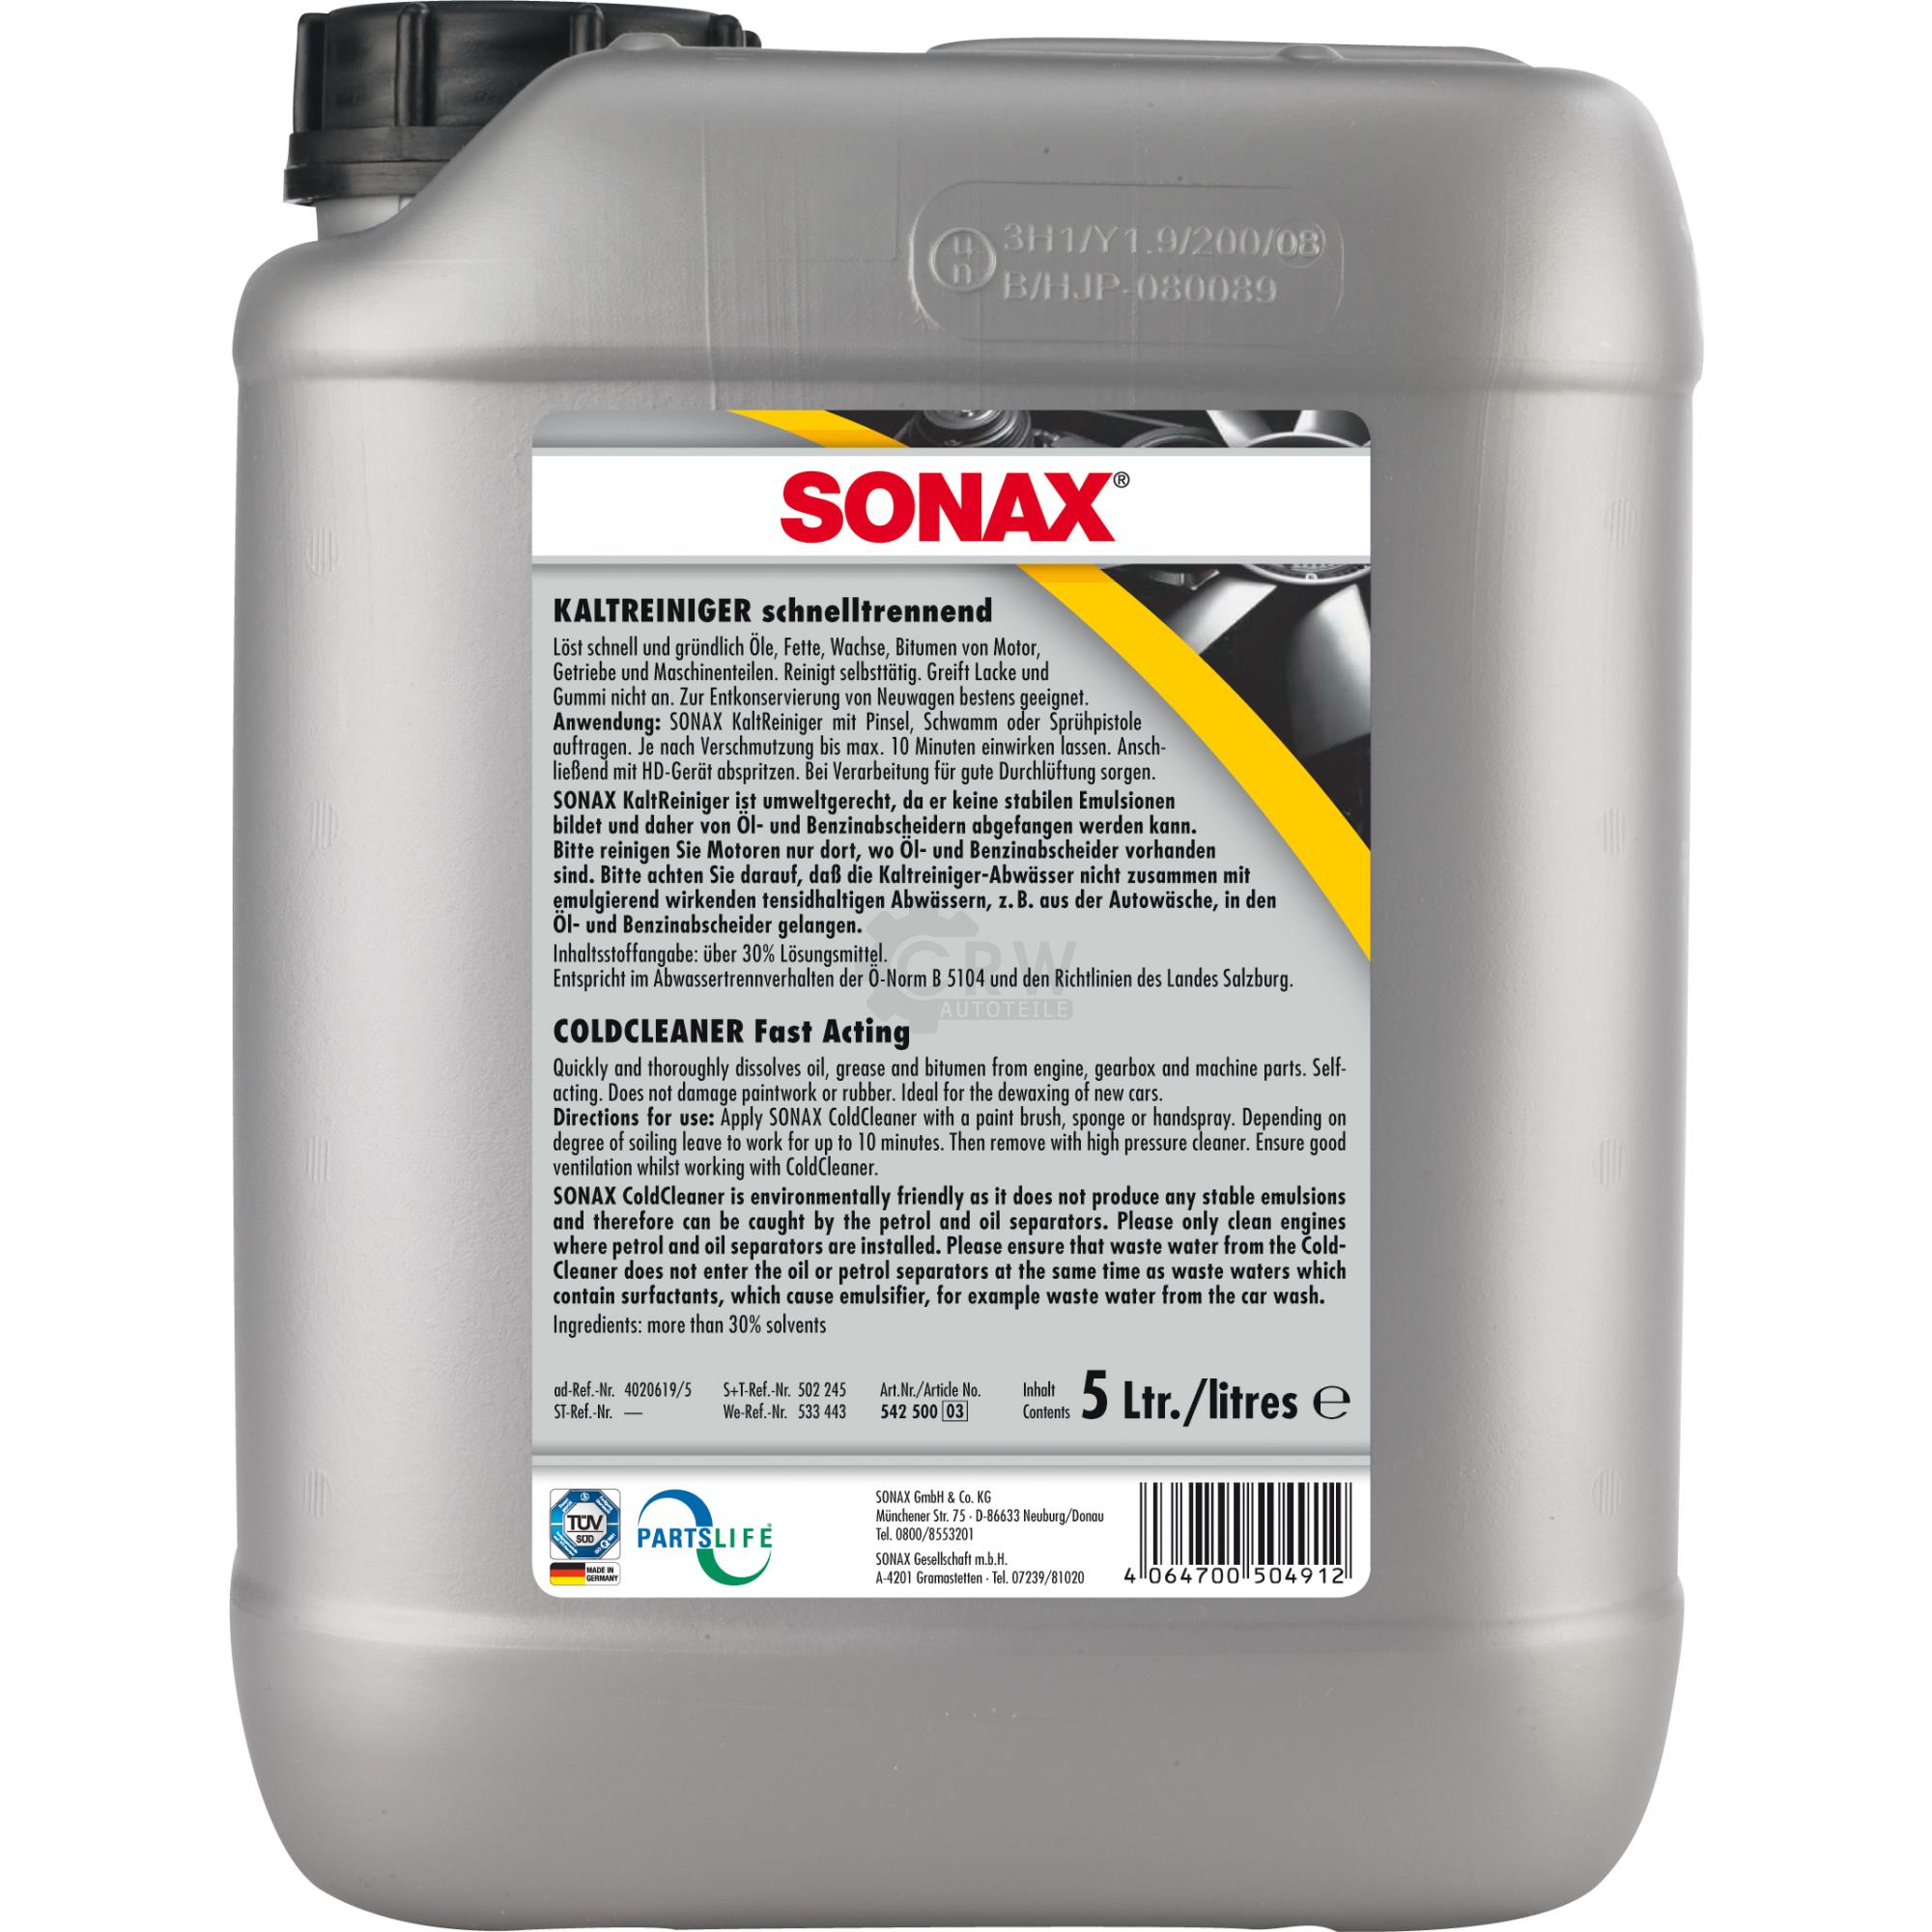 SONAX 05425000 KaltReiniger S schnelltrennend für Öl und Fett 5 Liter